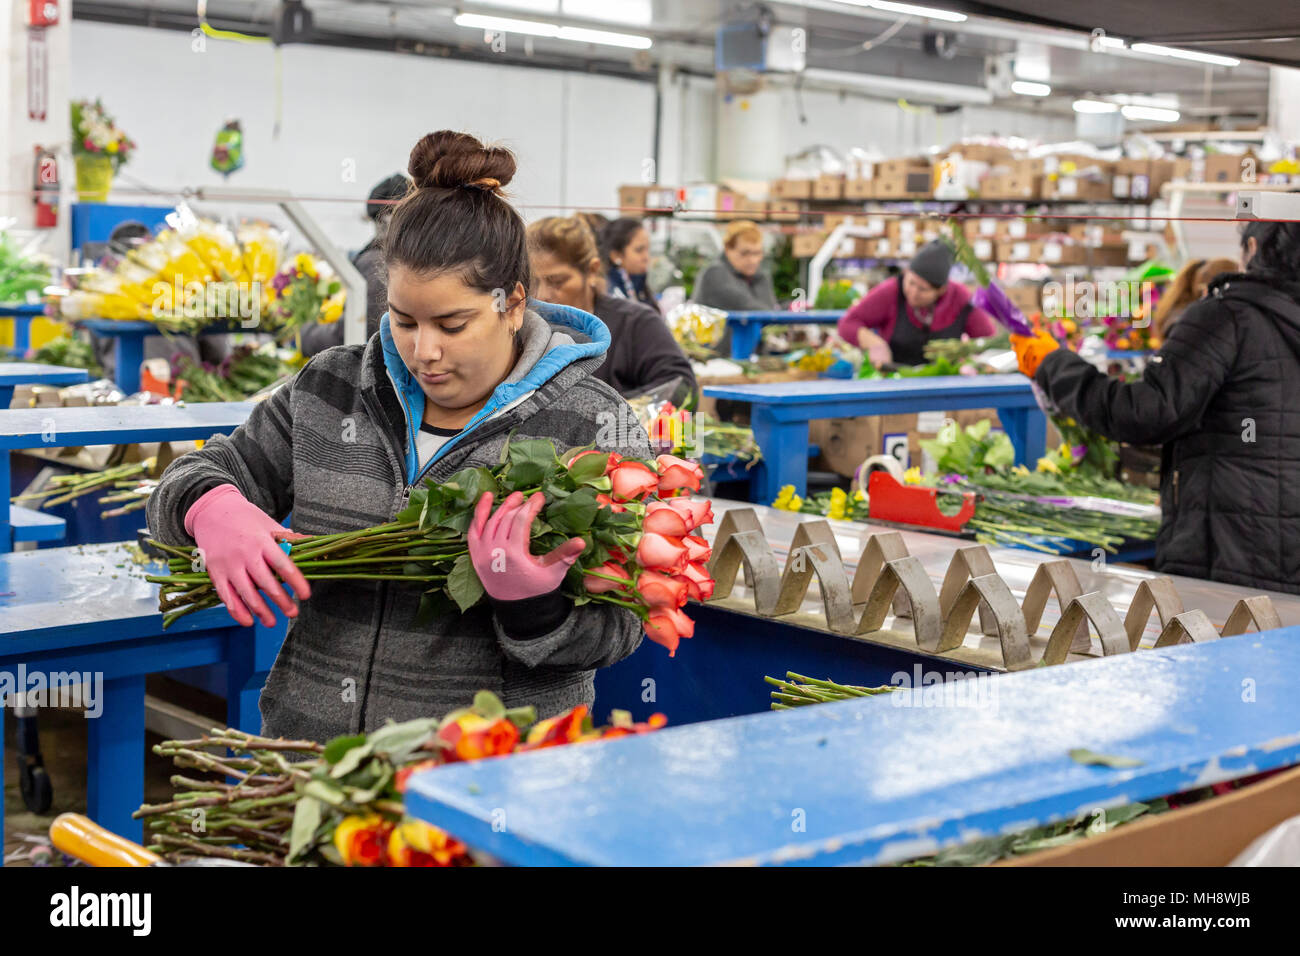 Doral, Florida - Arbeitnehmer Prozess Schnittblumen aus Südamerika in die USA Blumenstrauß Lagerhaus in der Nähe des Miami Flughafen. Arbeiten bei 40 Grad F, Frauen pa Stockfoto